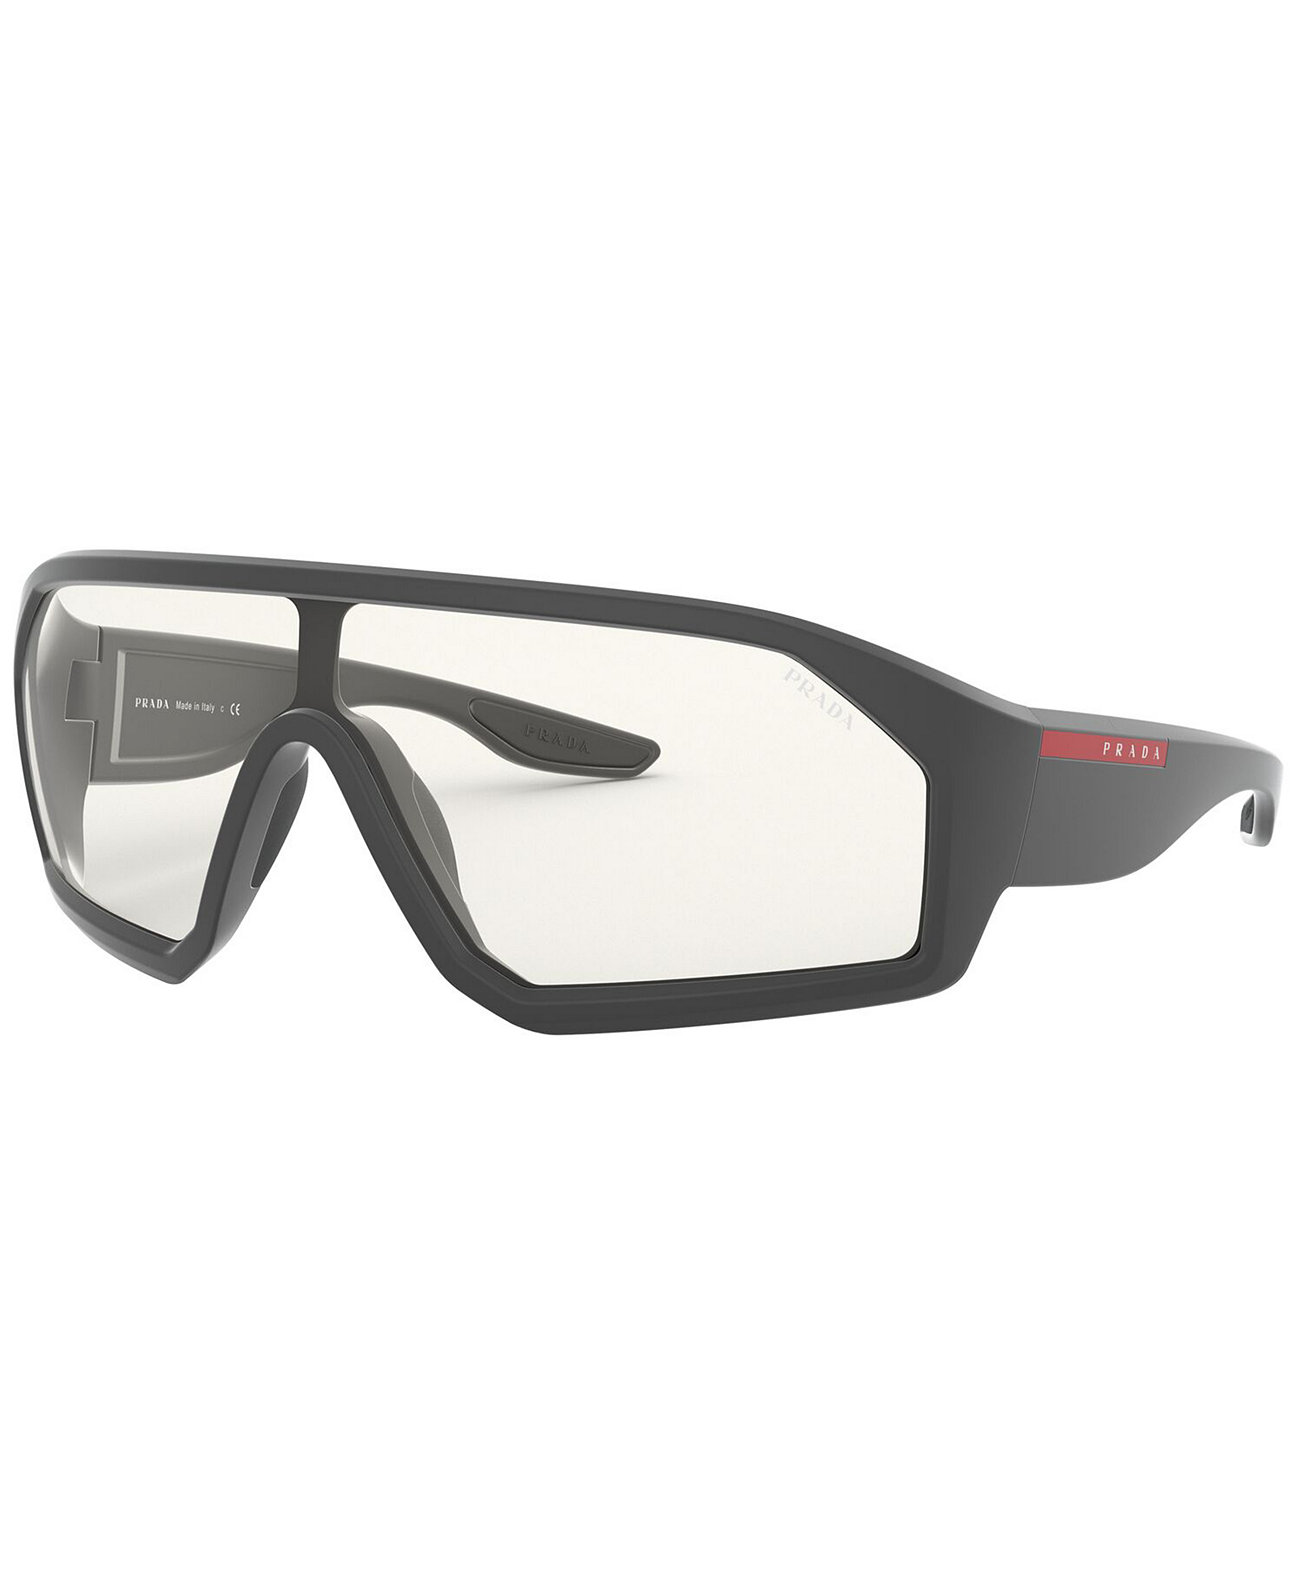 Мужские солнцезащитные очки, PS 03VS 36 Prada Linea Rossa